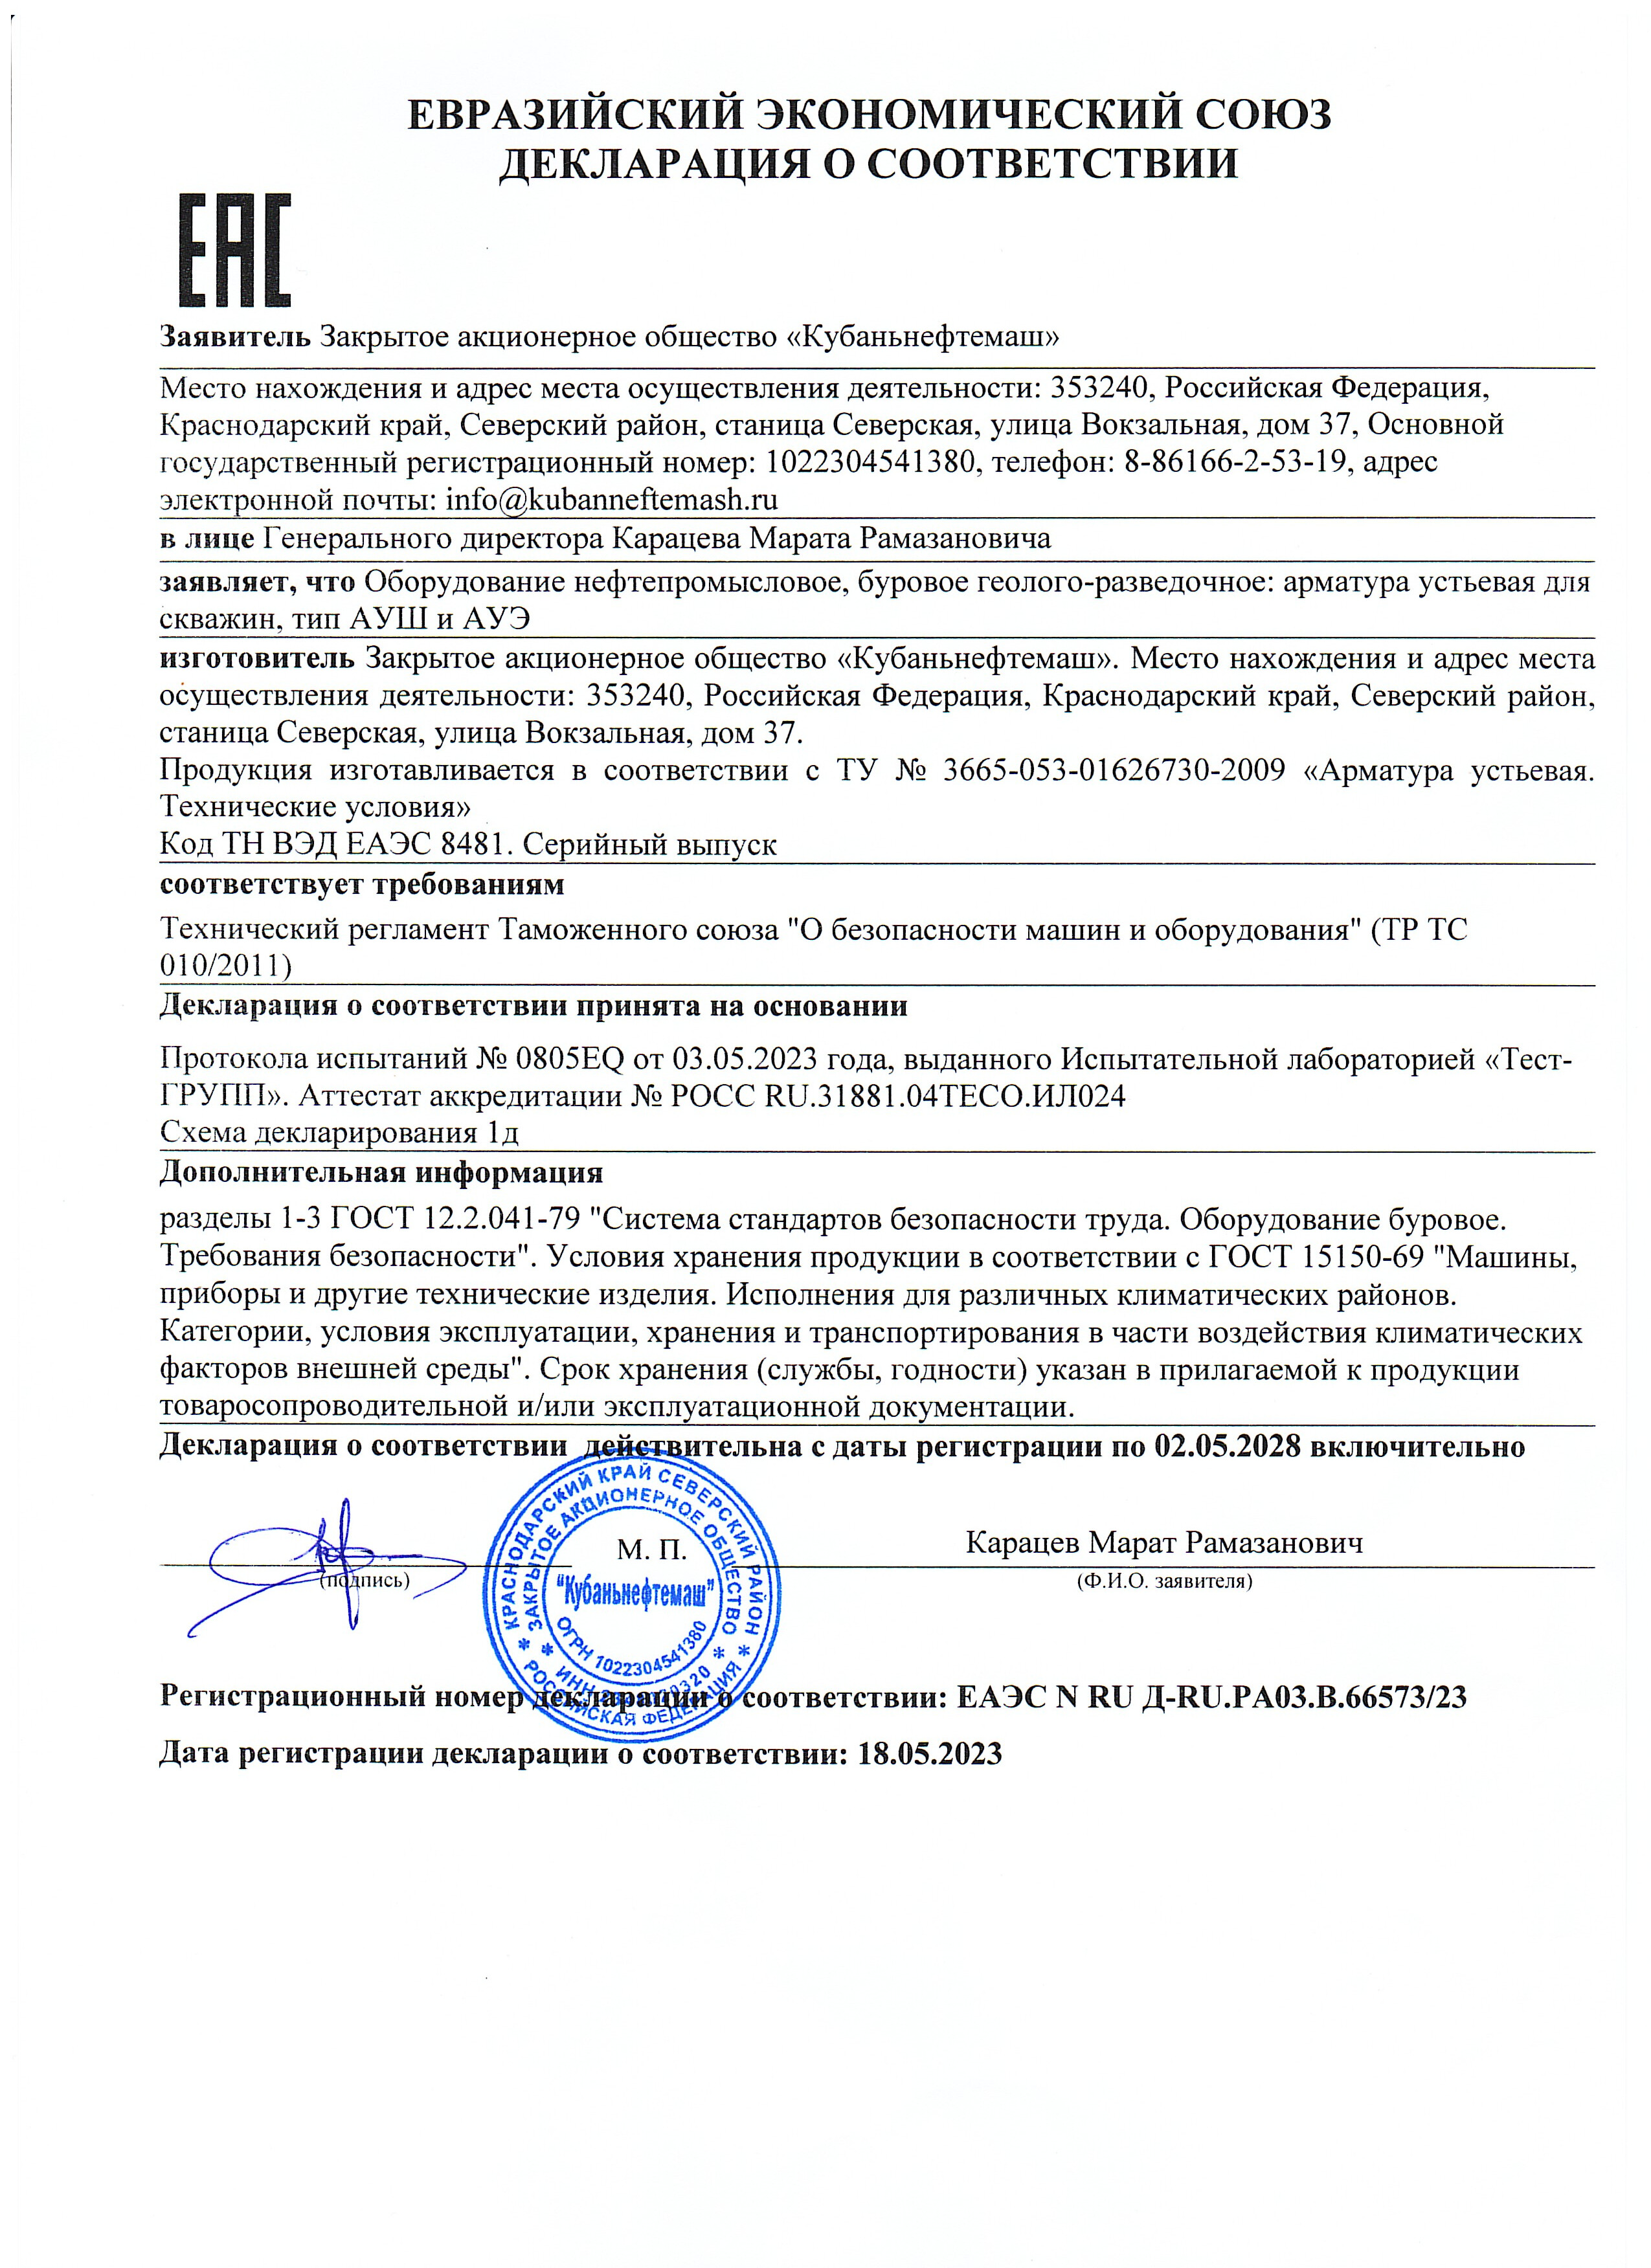 декларация о соответствии - блок гидравлический АНТ-150